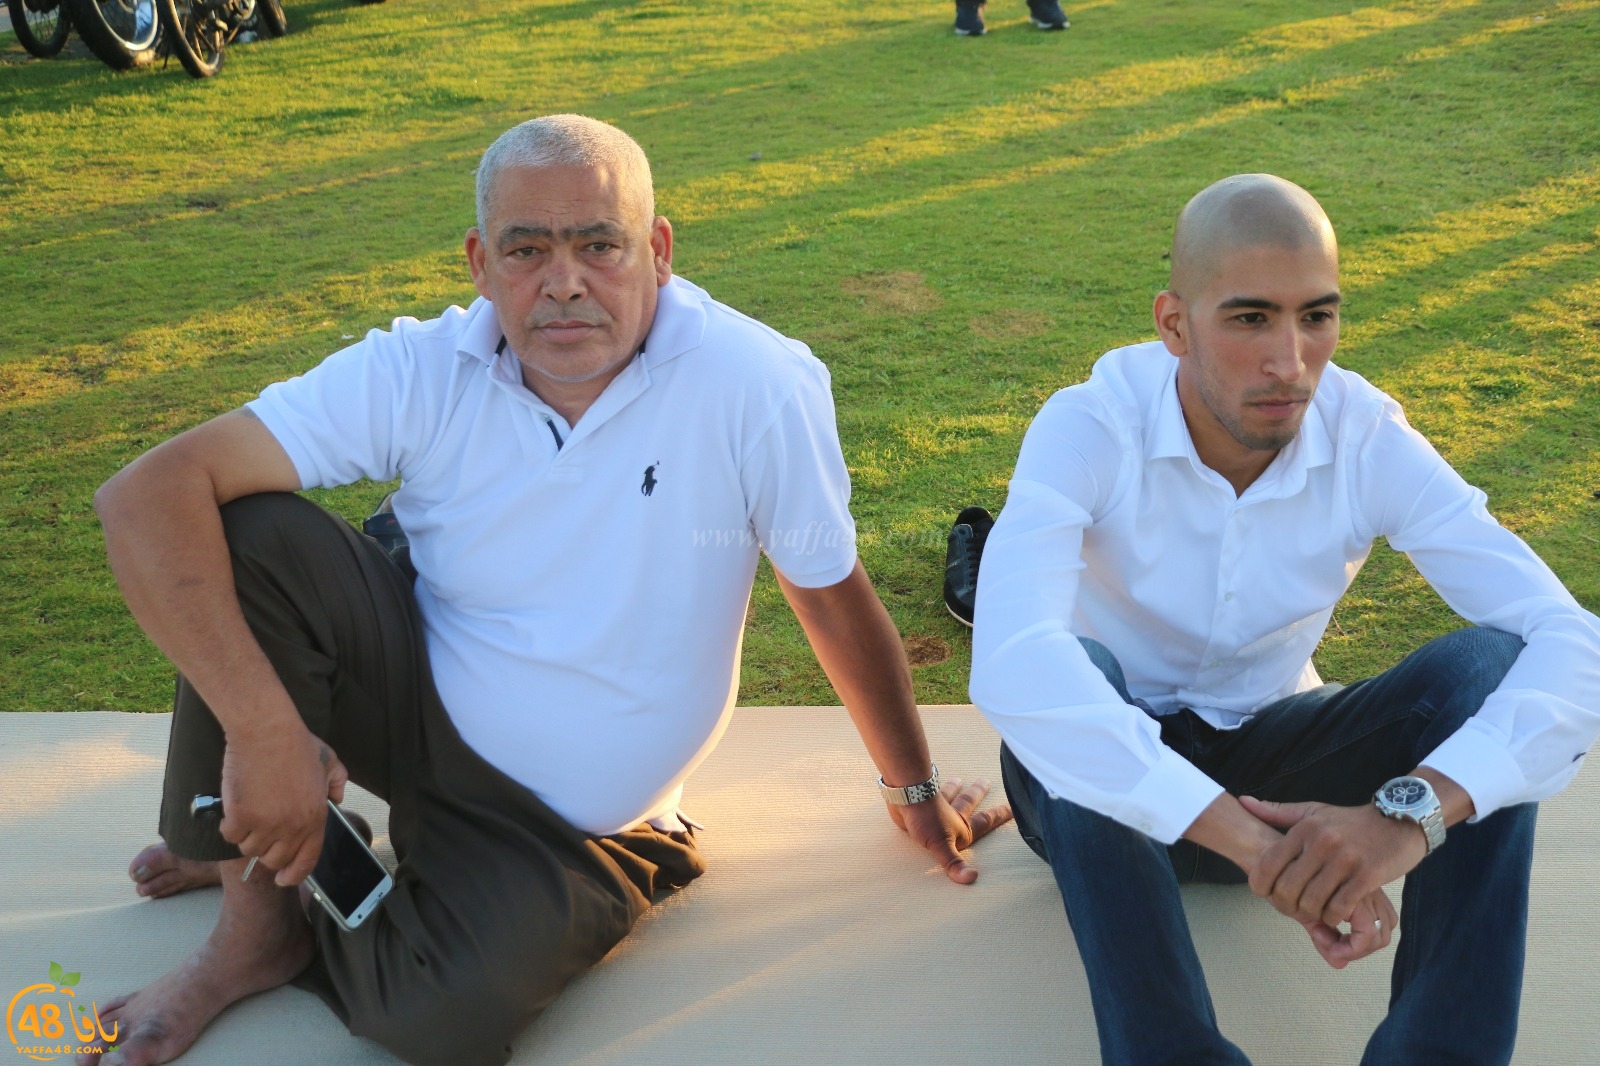  صور: للعام الثاني على التوالي - أهالي يافا يؤدون صلاة العيد في الخلاء متنزه العجمي 